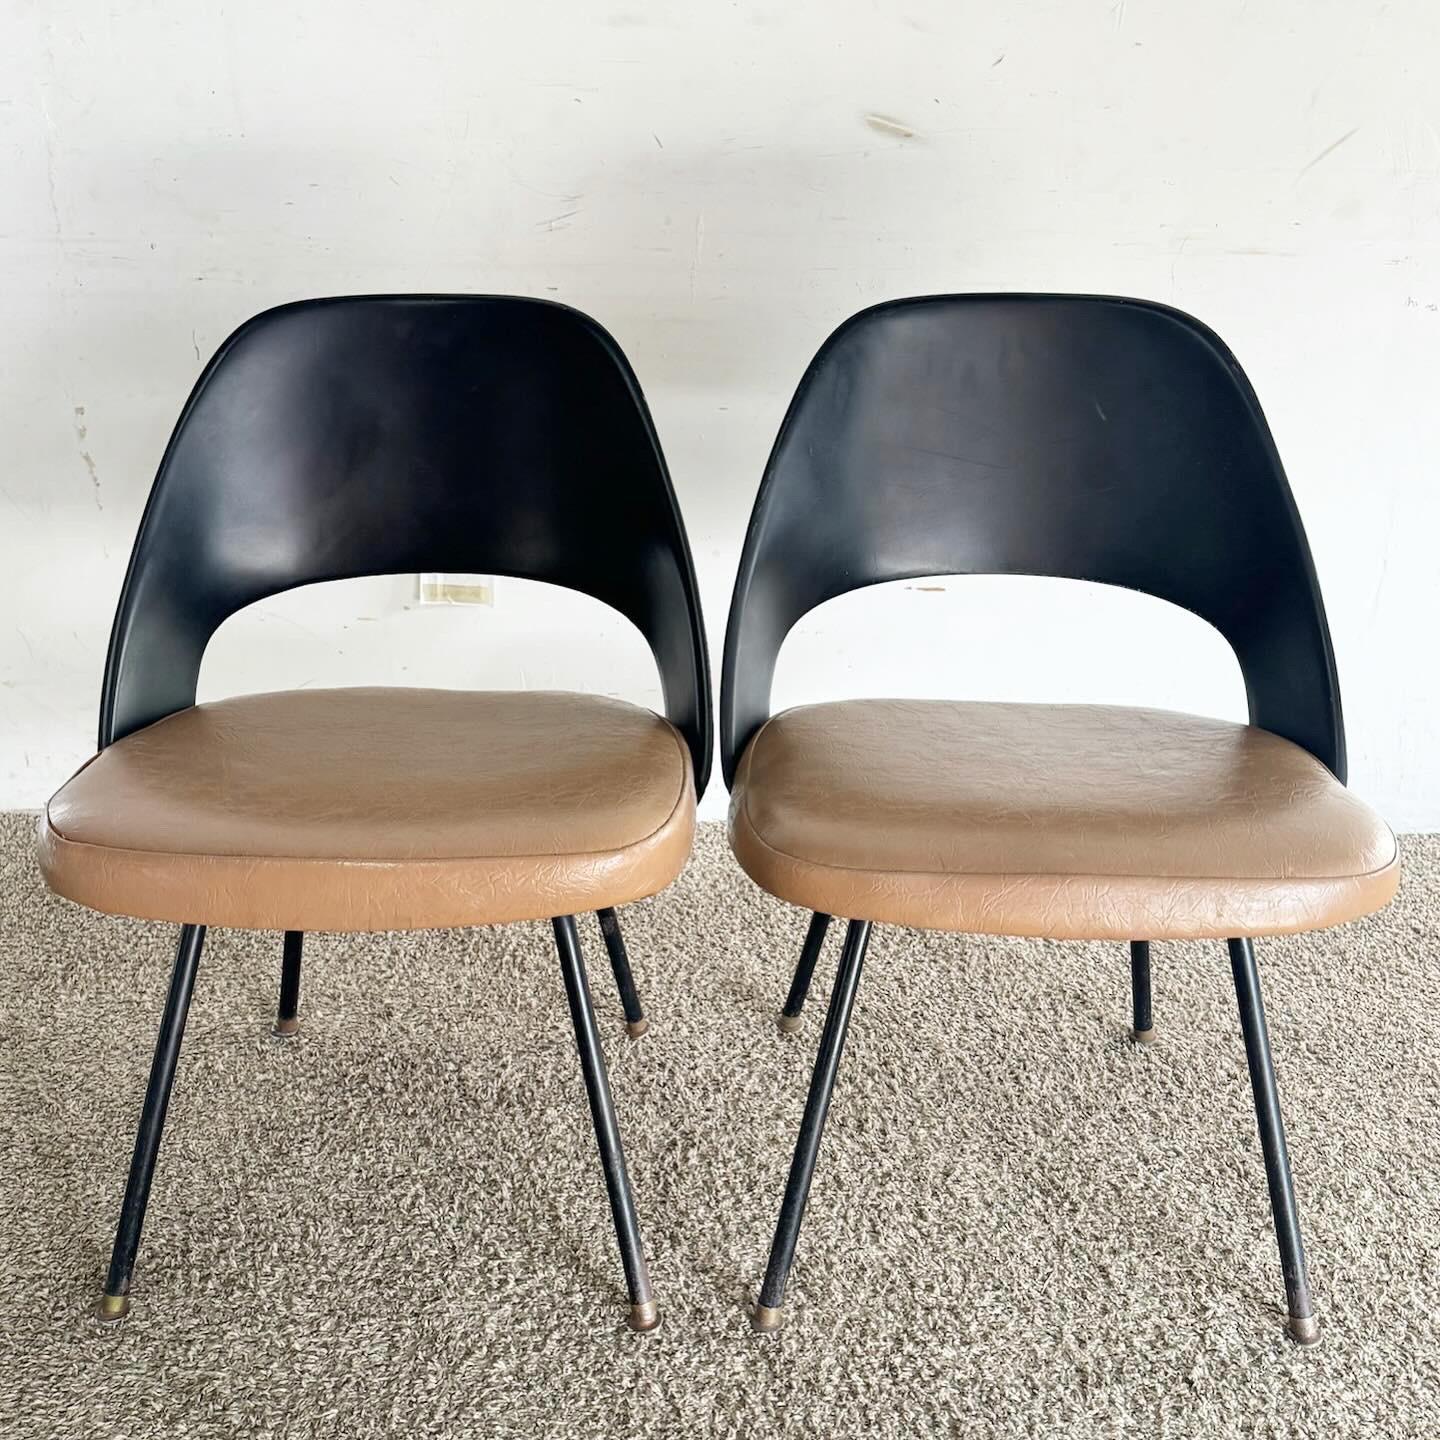 Les chaises de salle à manger Eero Saarinen Model 42 Style, dans un ensemble de quatre, sont un hommage au design classique. Dotées d'un dossier en fibre de verre noire et d'élégants pieds en métal, ces chaises reflètent l'esthétique intemporelle de